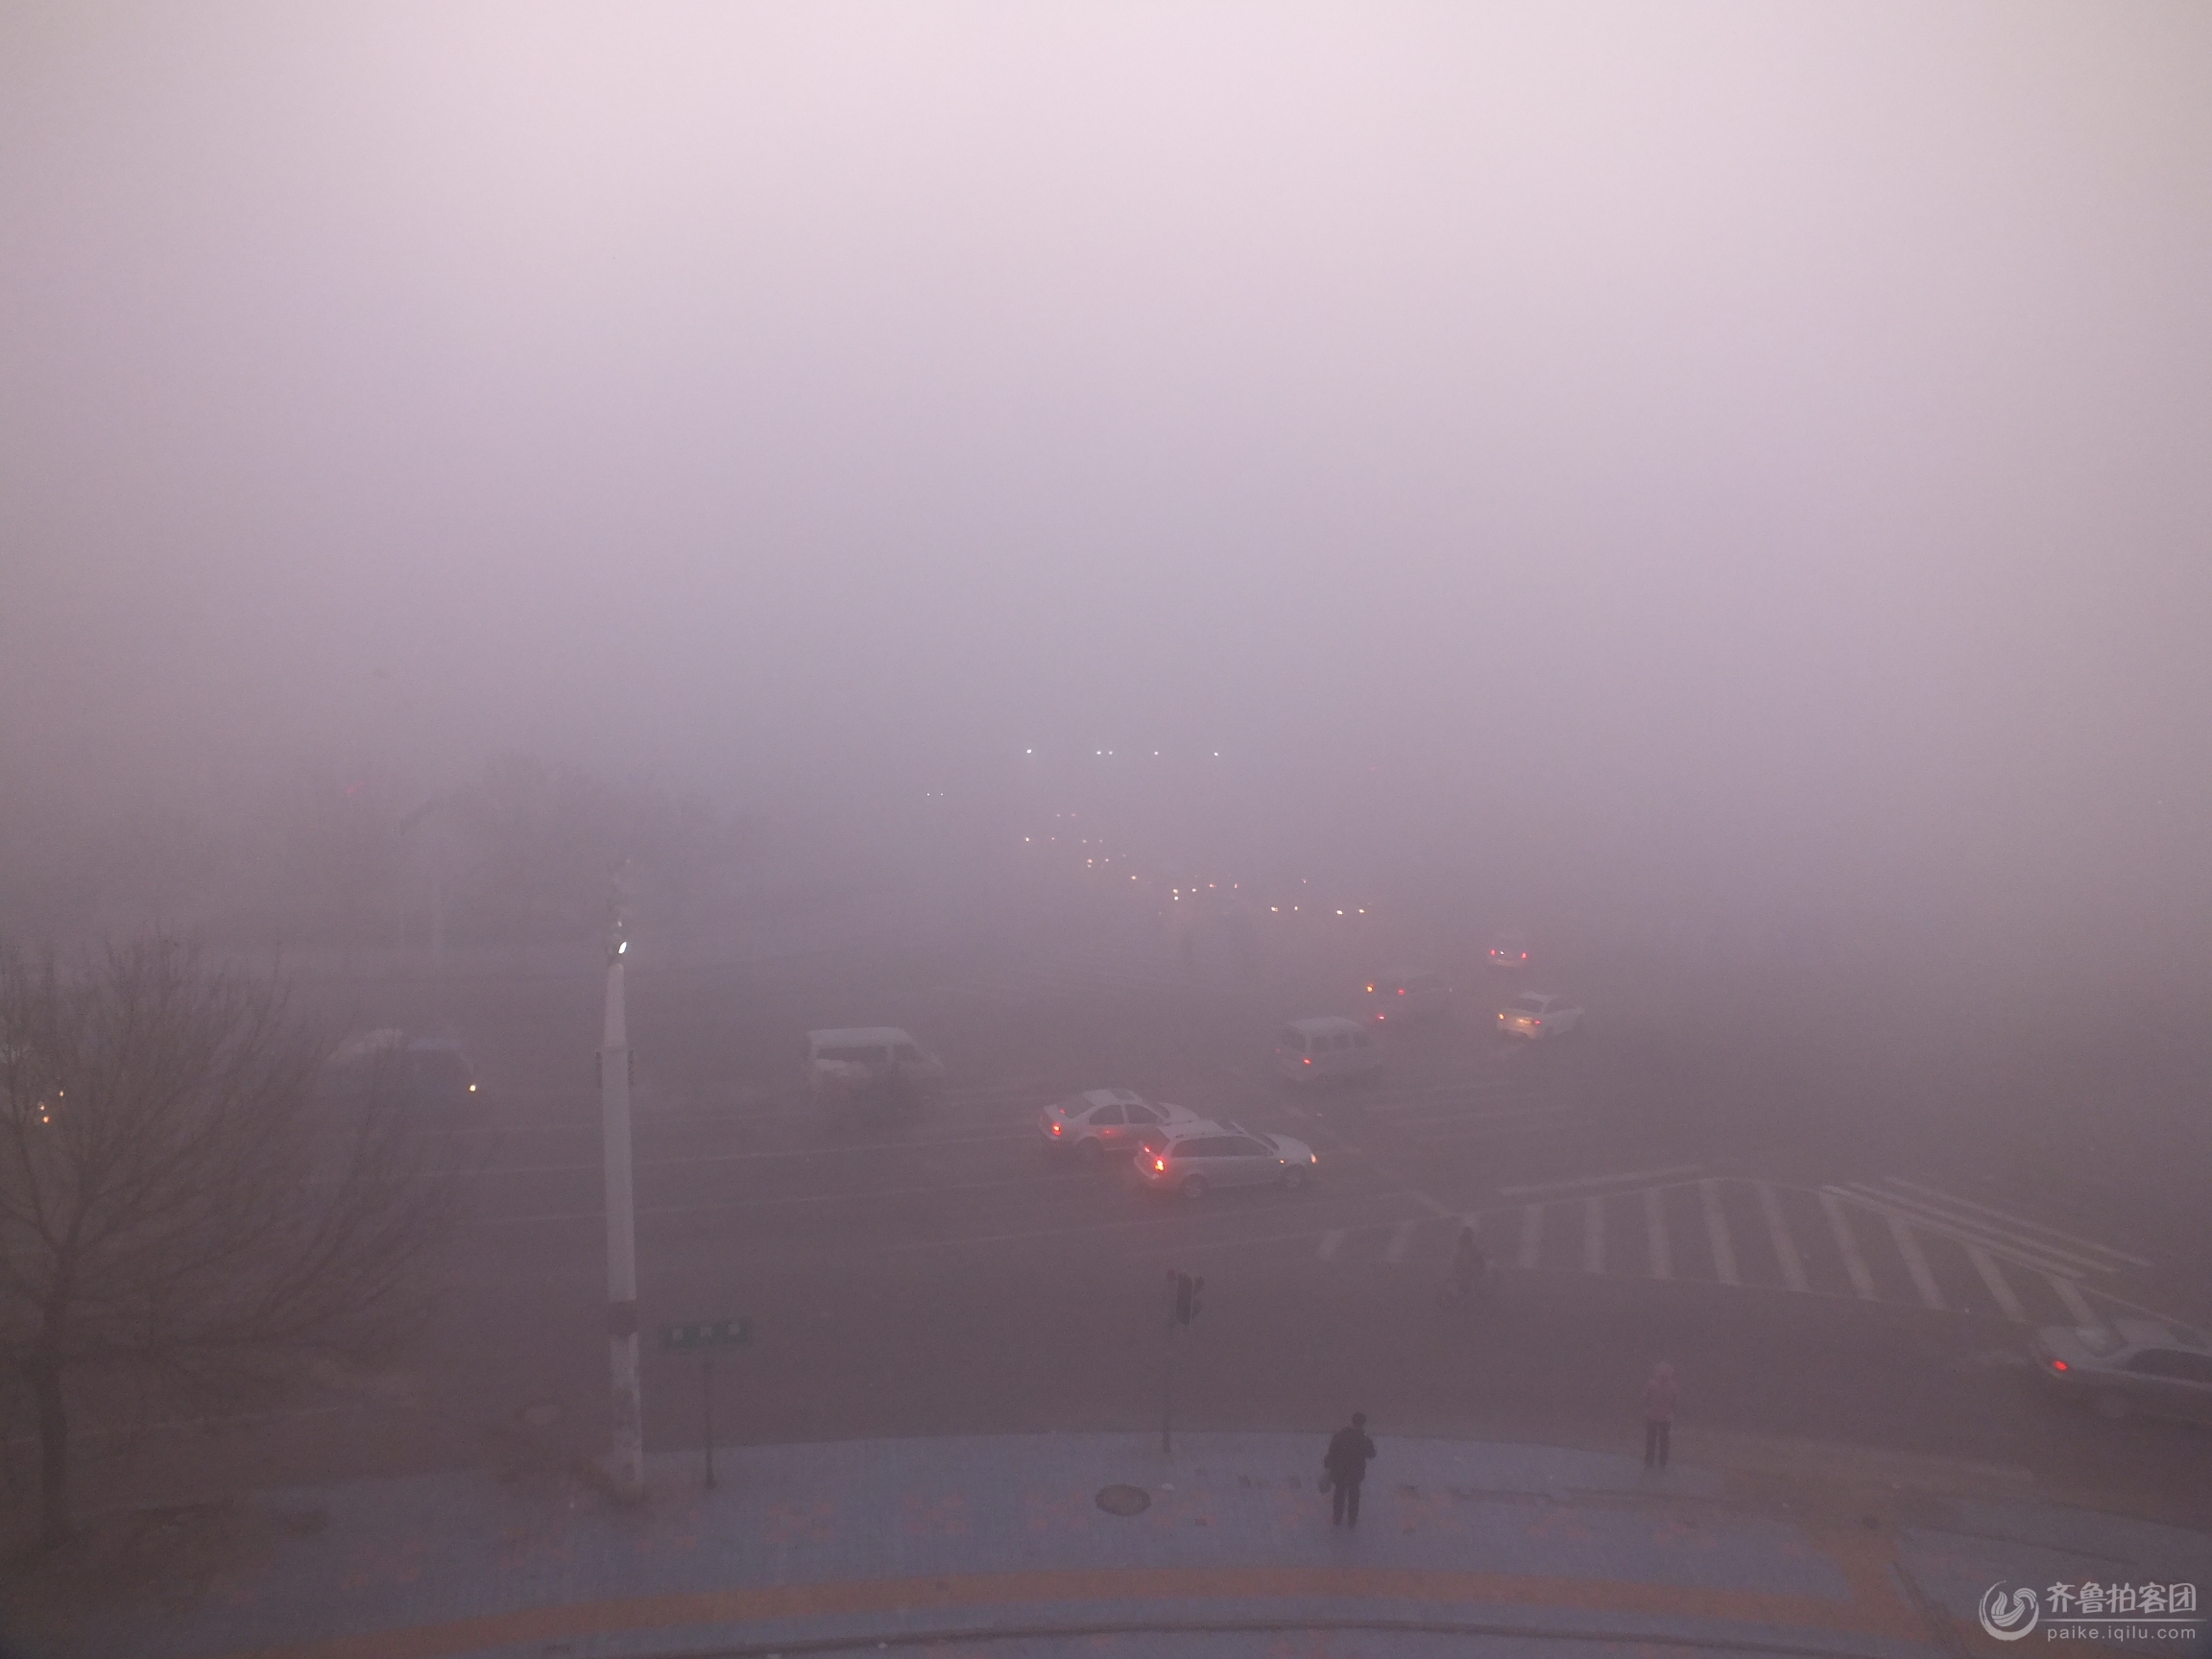 现在是元月15号早上7点12分.东营市区大雾弥漫.道路能见度极低.